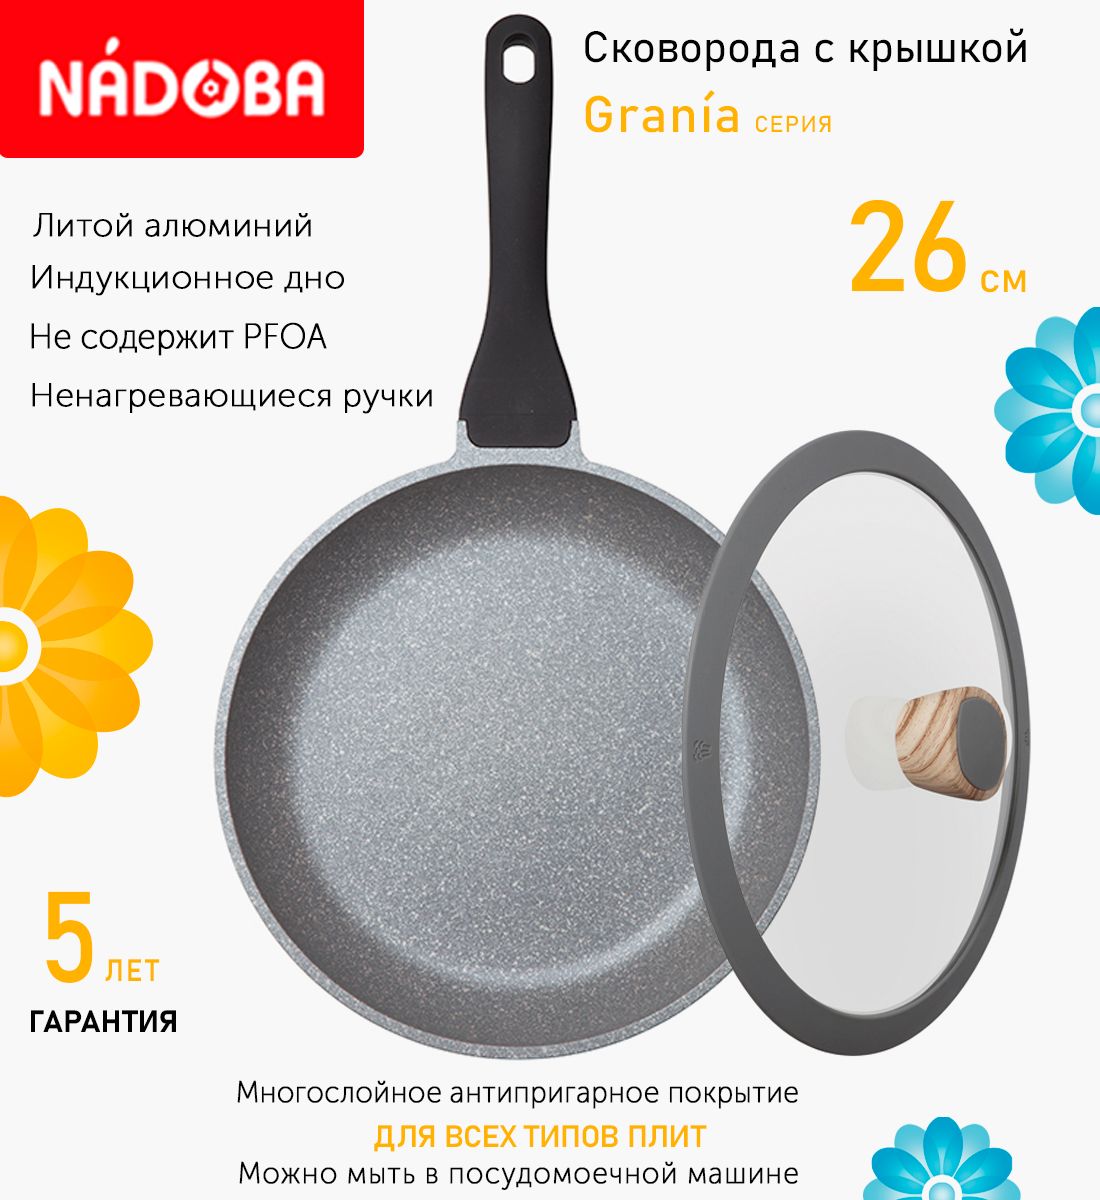 Сковорода с крышкой NADOBA 26 см серия Grania